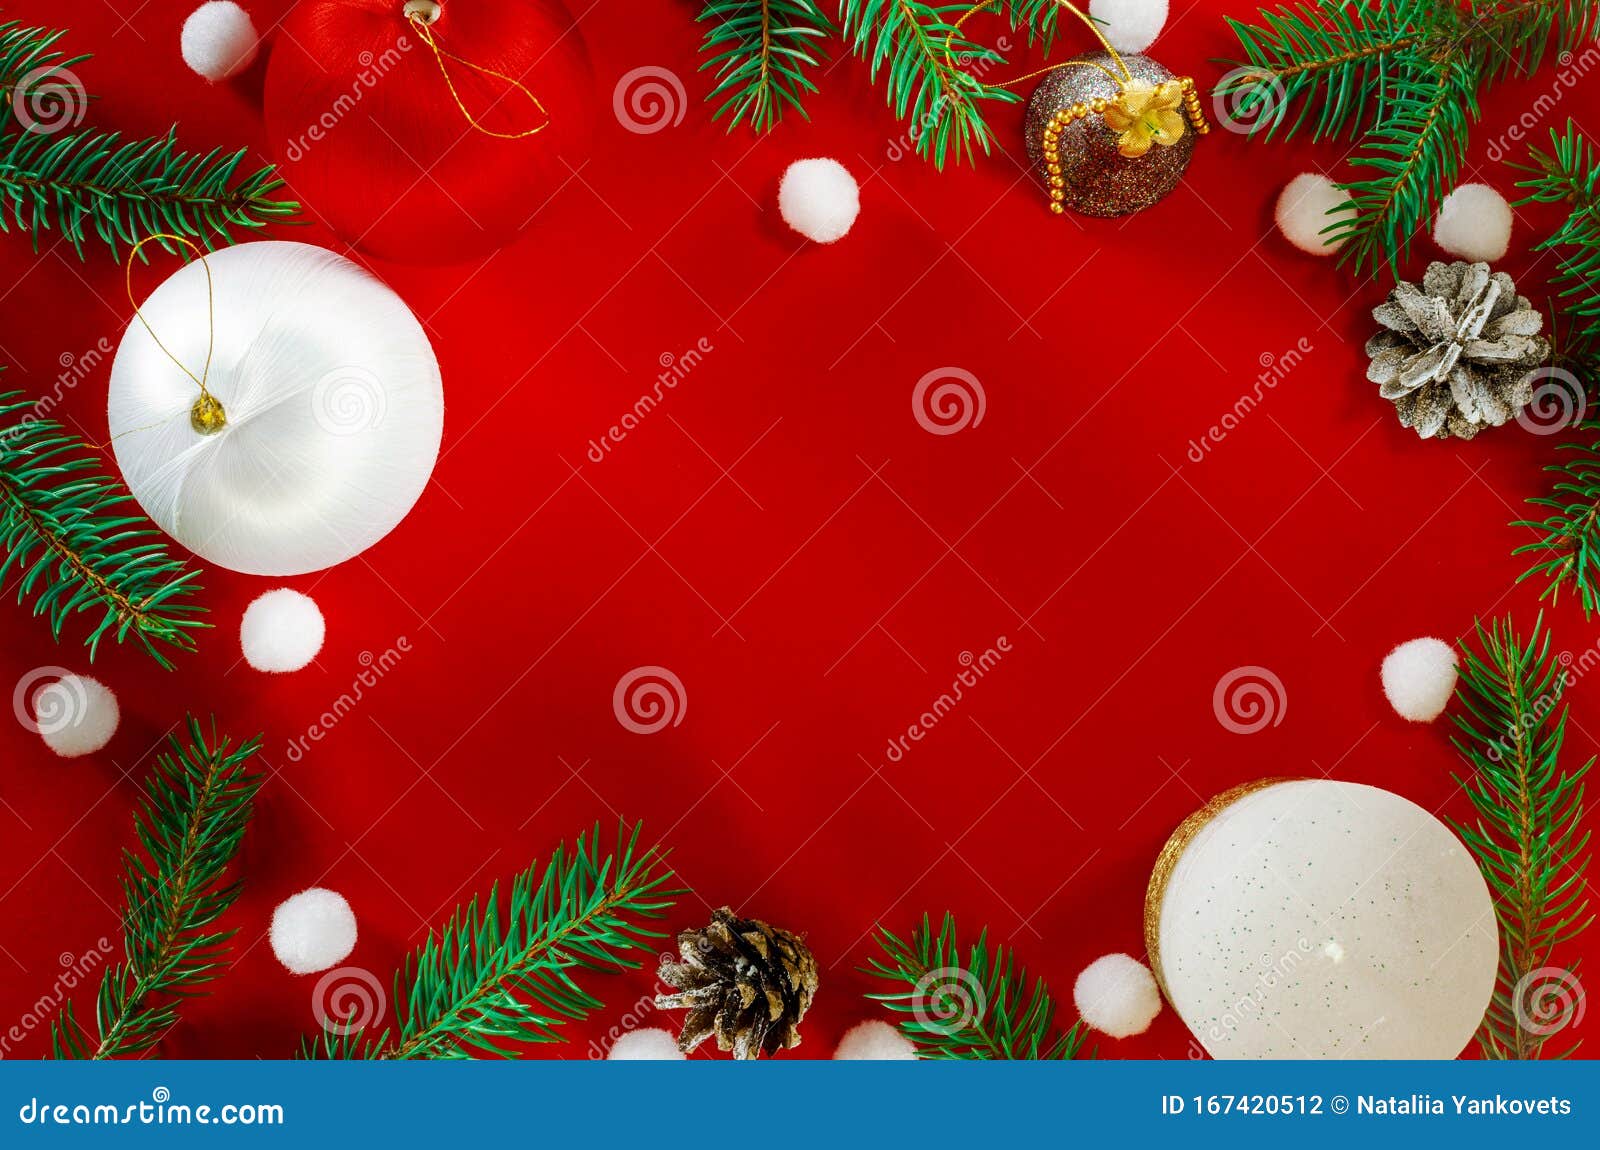 Hãy tận hưởng bầu không khí Giáng sinh ấm áp với hình nền màu đỏ rực rỡ! Khám phá những thiết kế tuyệt đẹp với hình ảnh Giáng sinh thú vị, choảng nhau trong tông màu đỏ nhấp nháy lung linh.